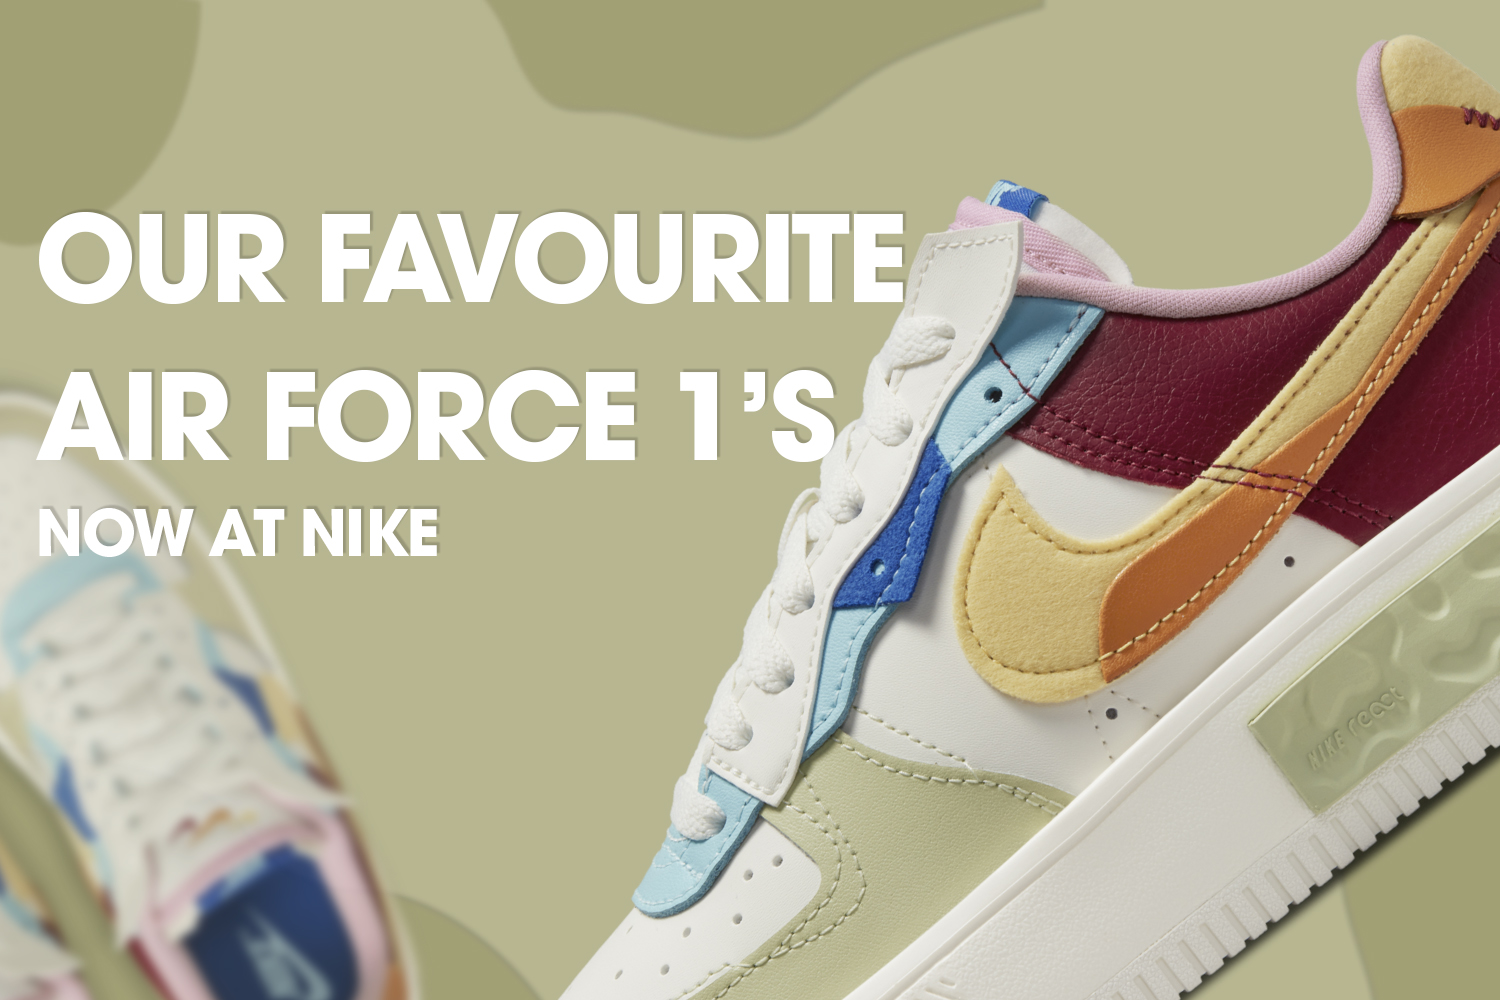 Onze favoriete Air Force 1's nu bij Nike